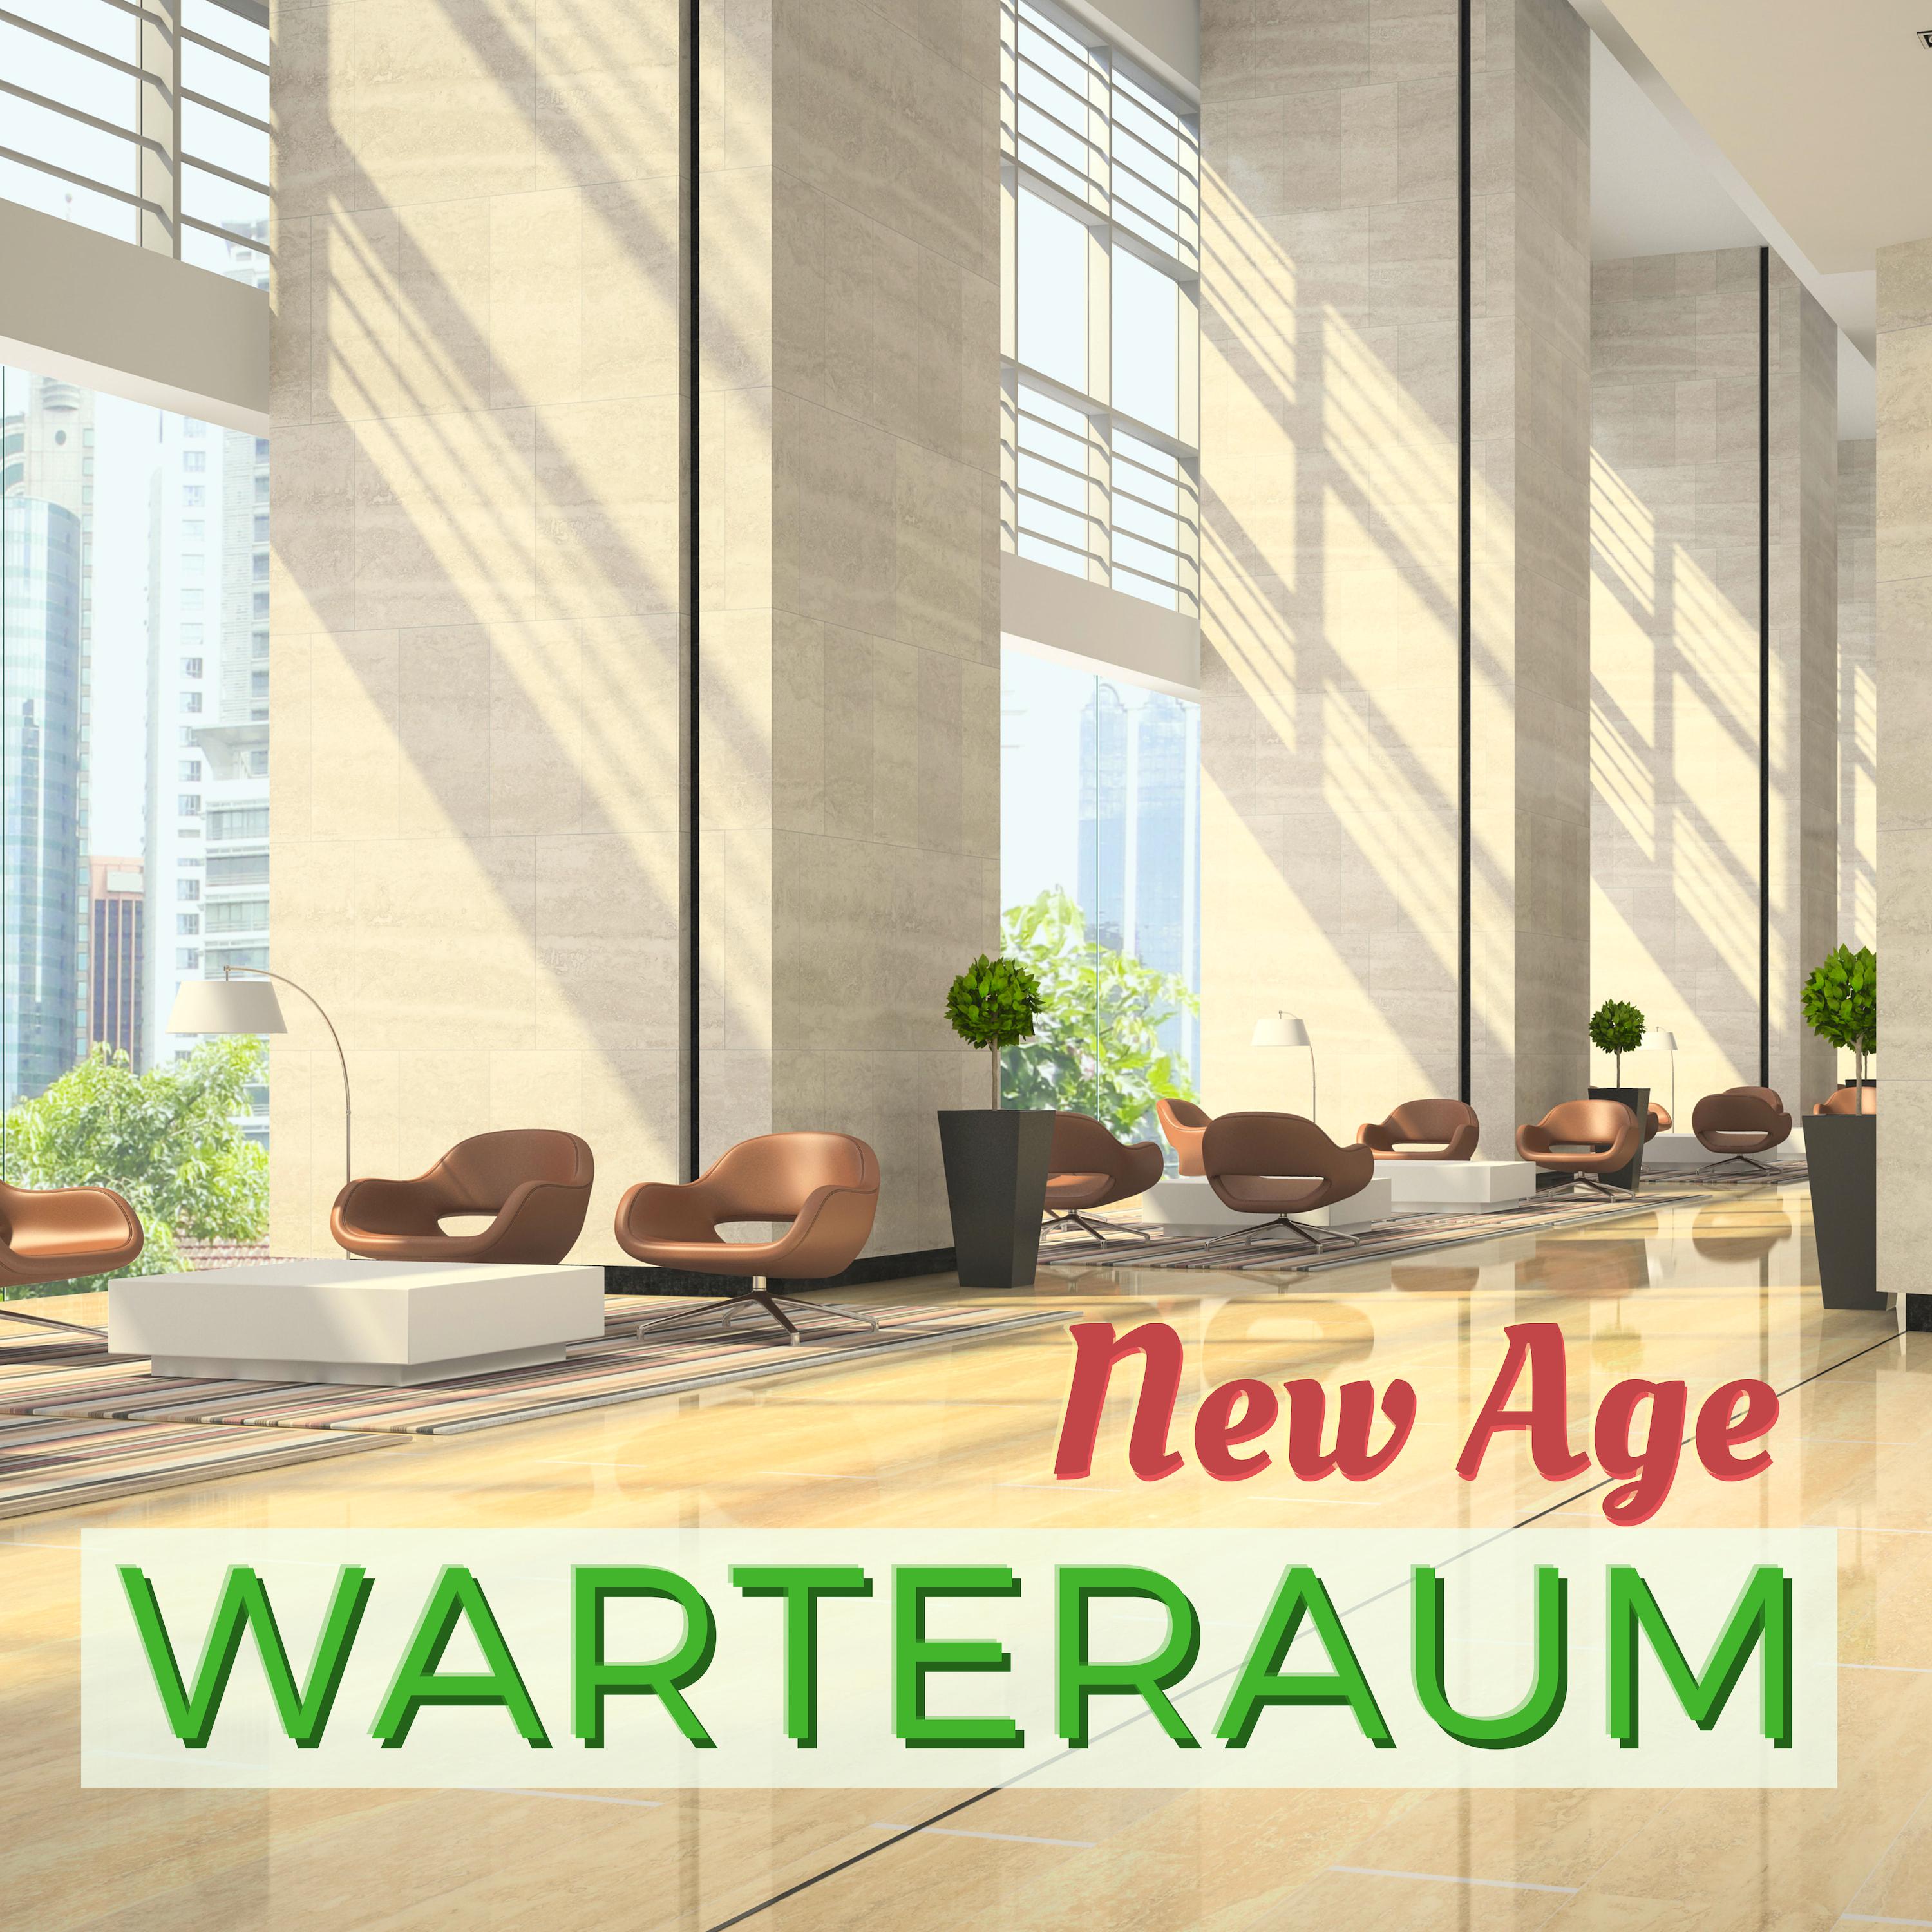 New Age Warteraum